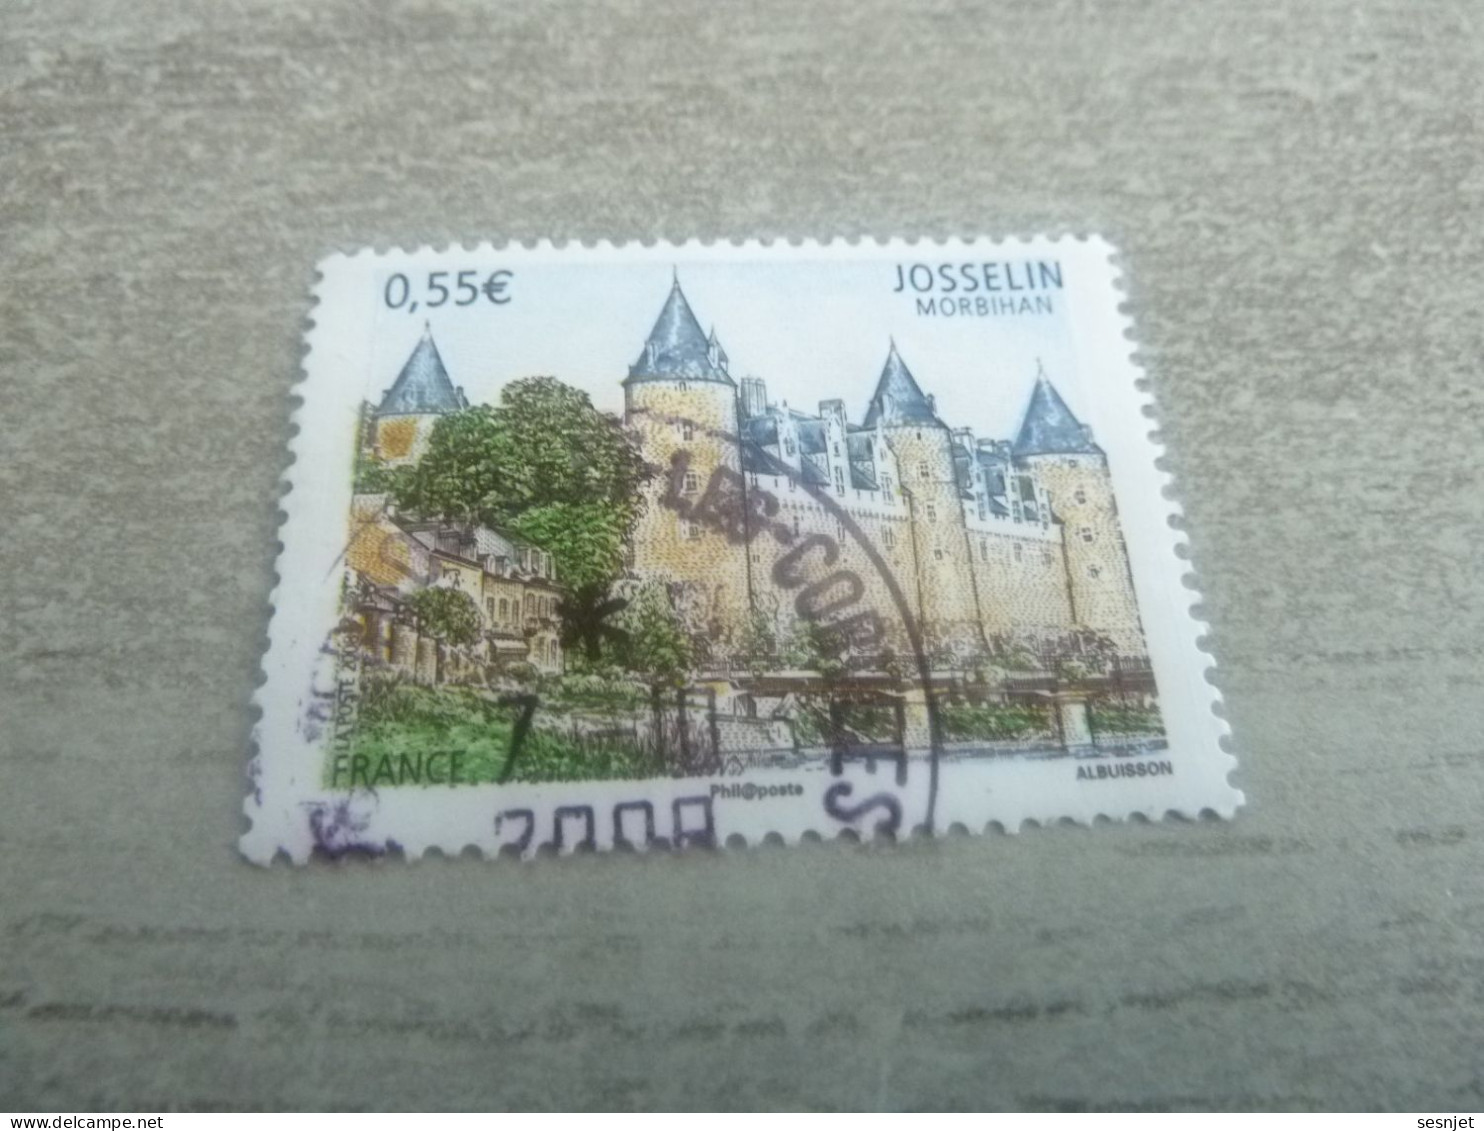 Josselin (Morbihan) - Château Famille Rohan - 0.55 € - Yt 4281 - Multicolore - Oblitéré - Année 2008 - - Châteaux